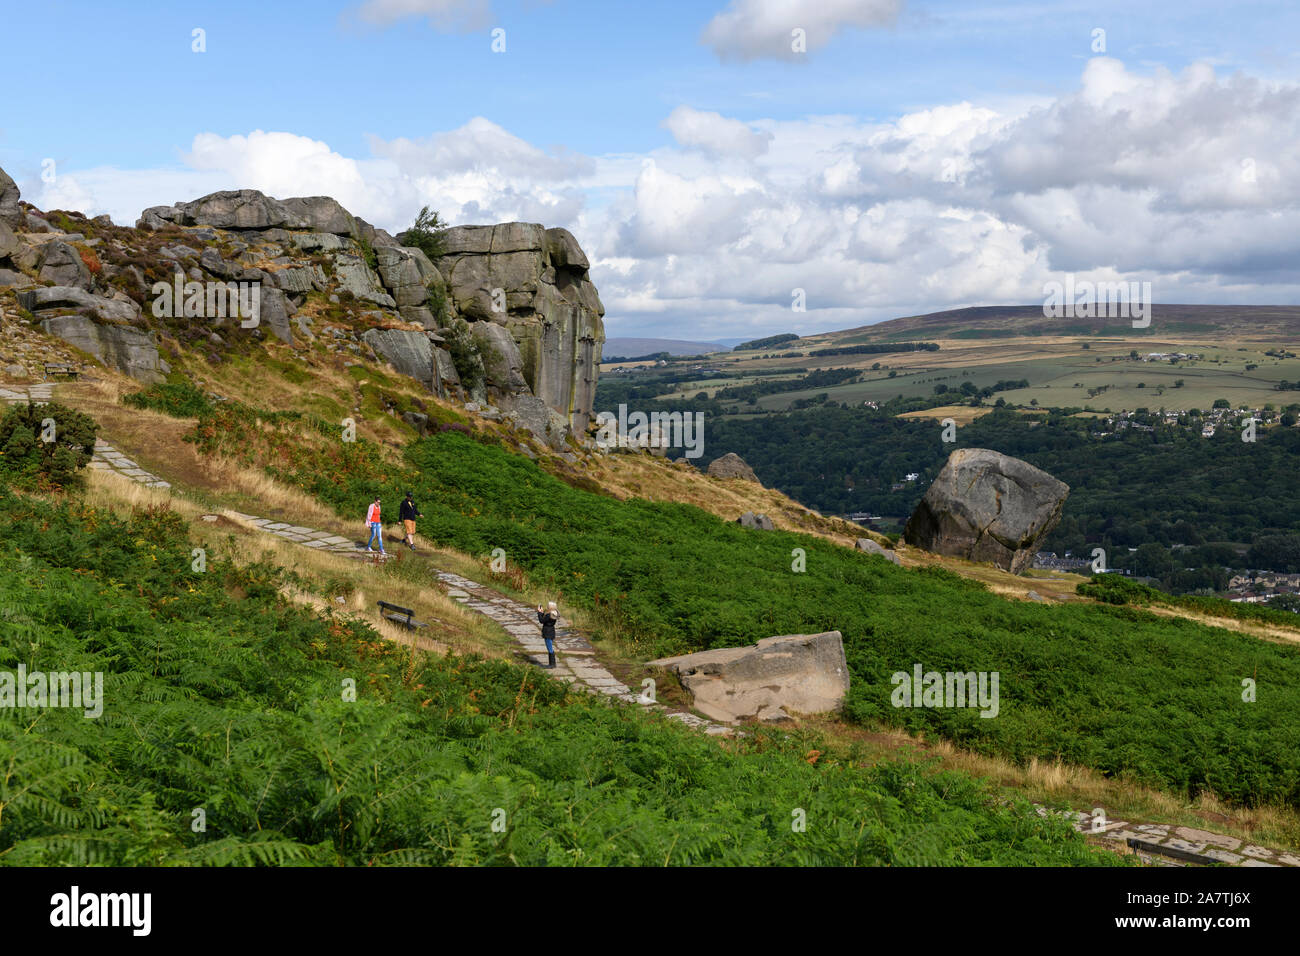 Les gens qui marchent sur le chemin par la haute vallée ensoleillée piton rocheux (ci-dessous) - paysage pittoresque de veau Vache et rochers, Ilkley Moor, West Yorkshire, Angleterre, Royaume-Uni. Banque D'Images